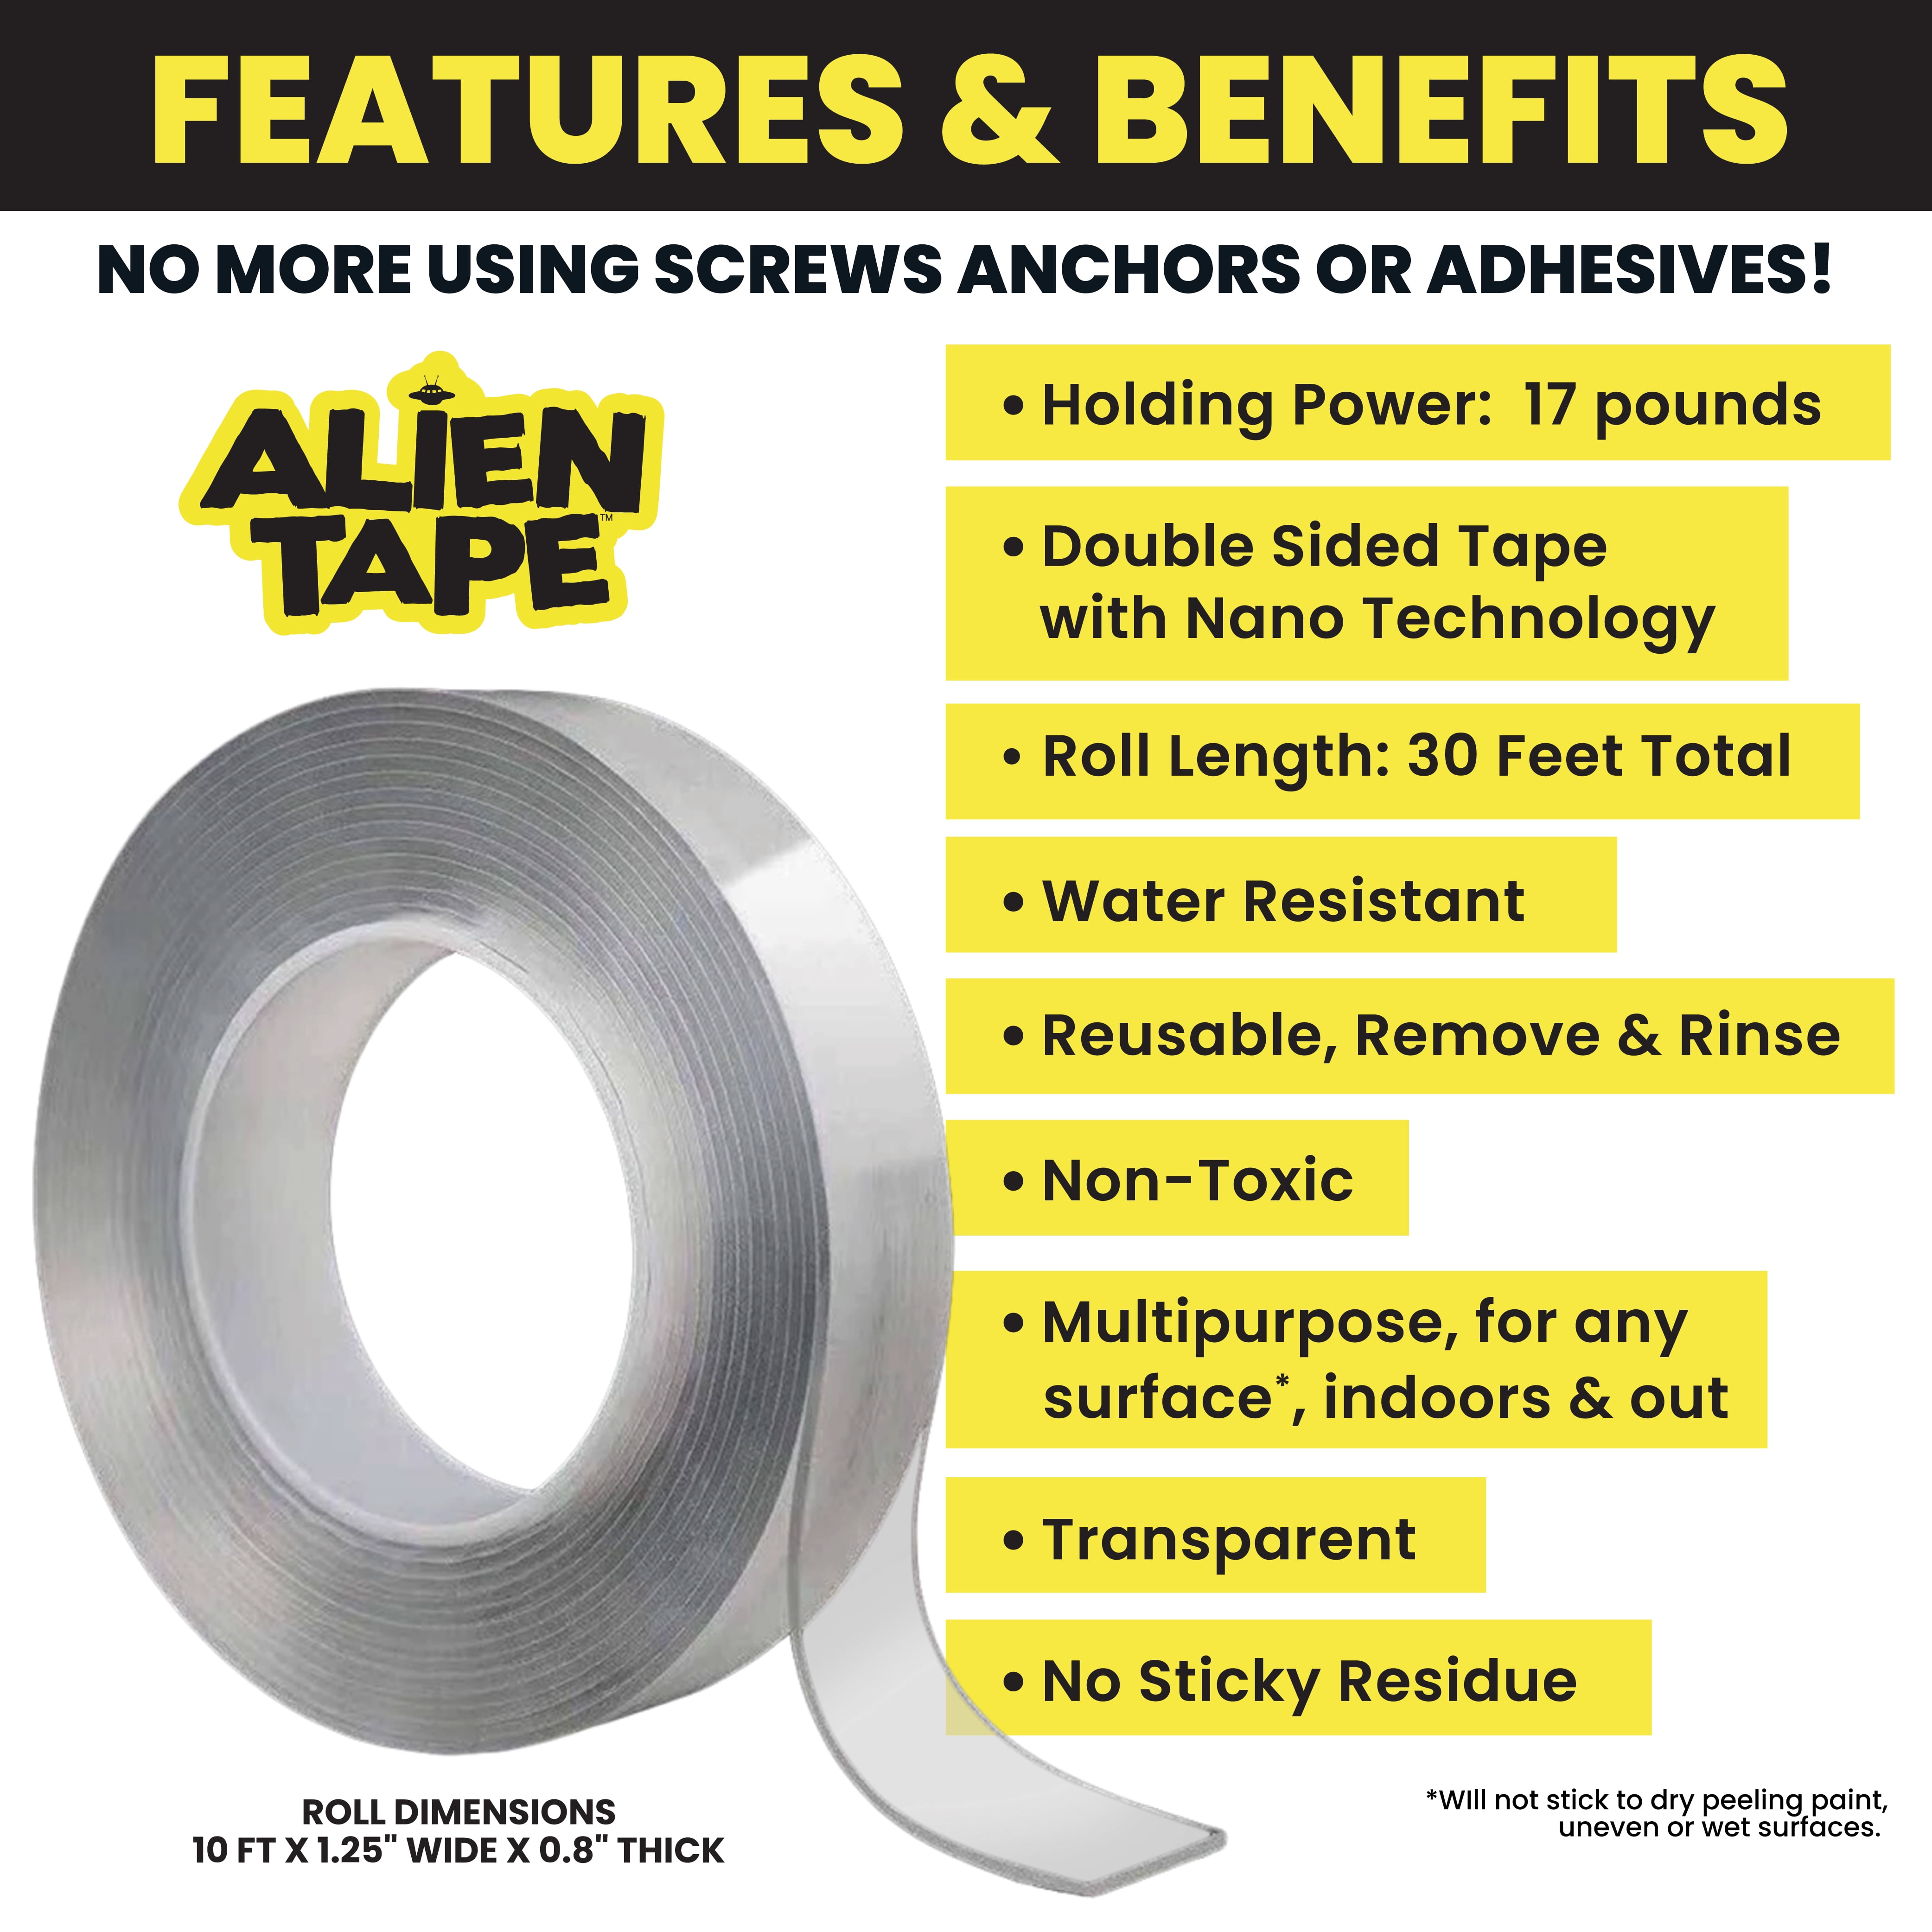 Alien Tape Multipurpose Reusable Double Sided Tape 6 Rolls, 60Ft.